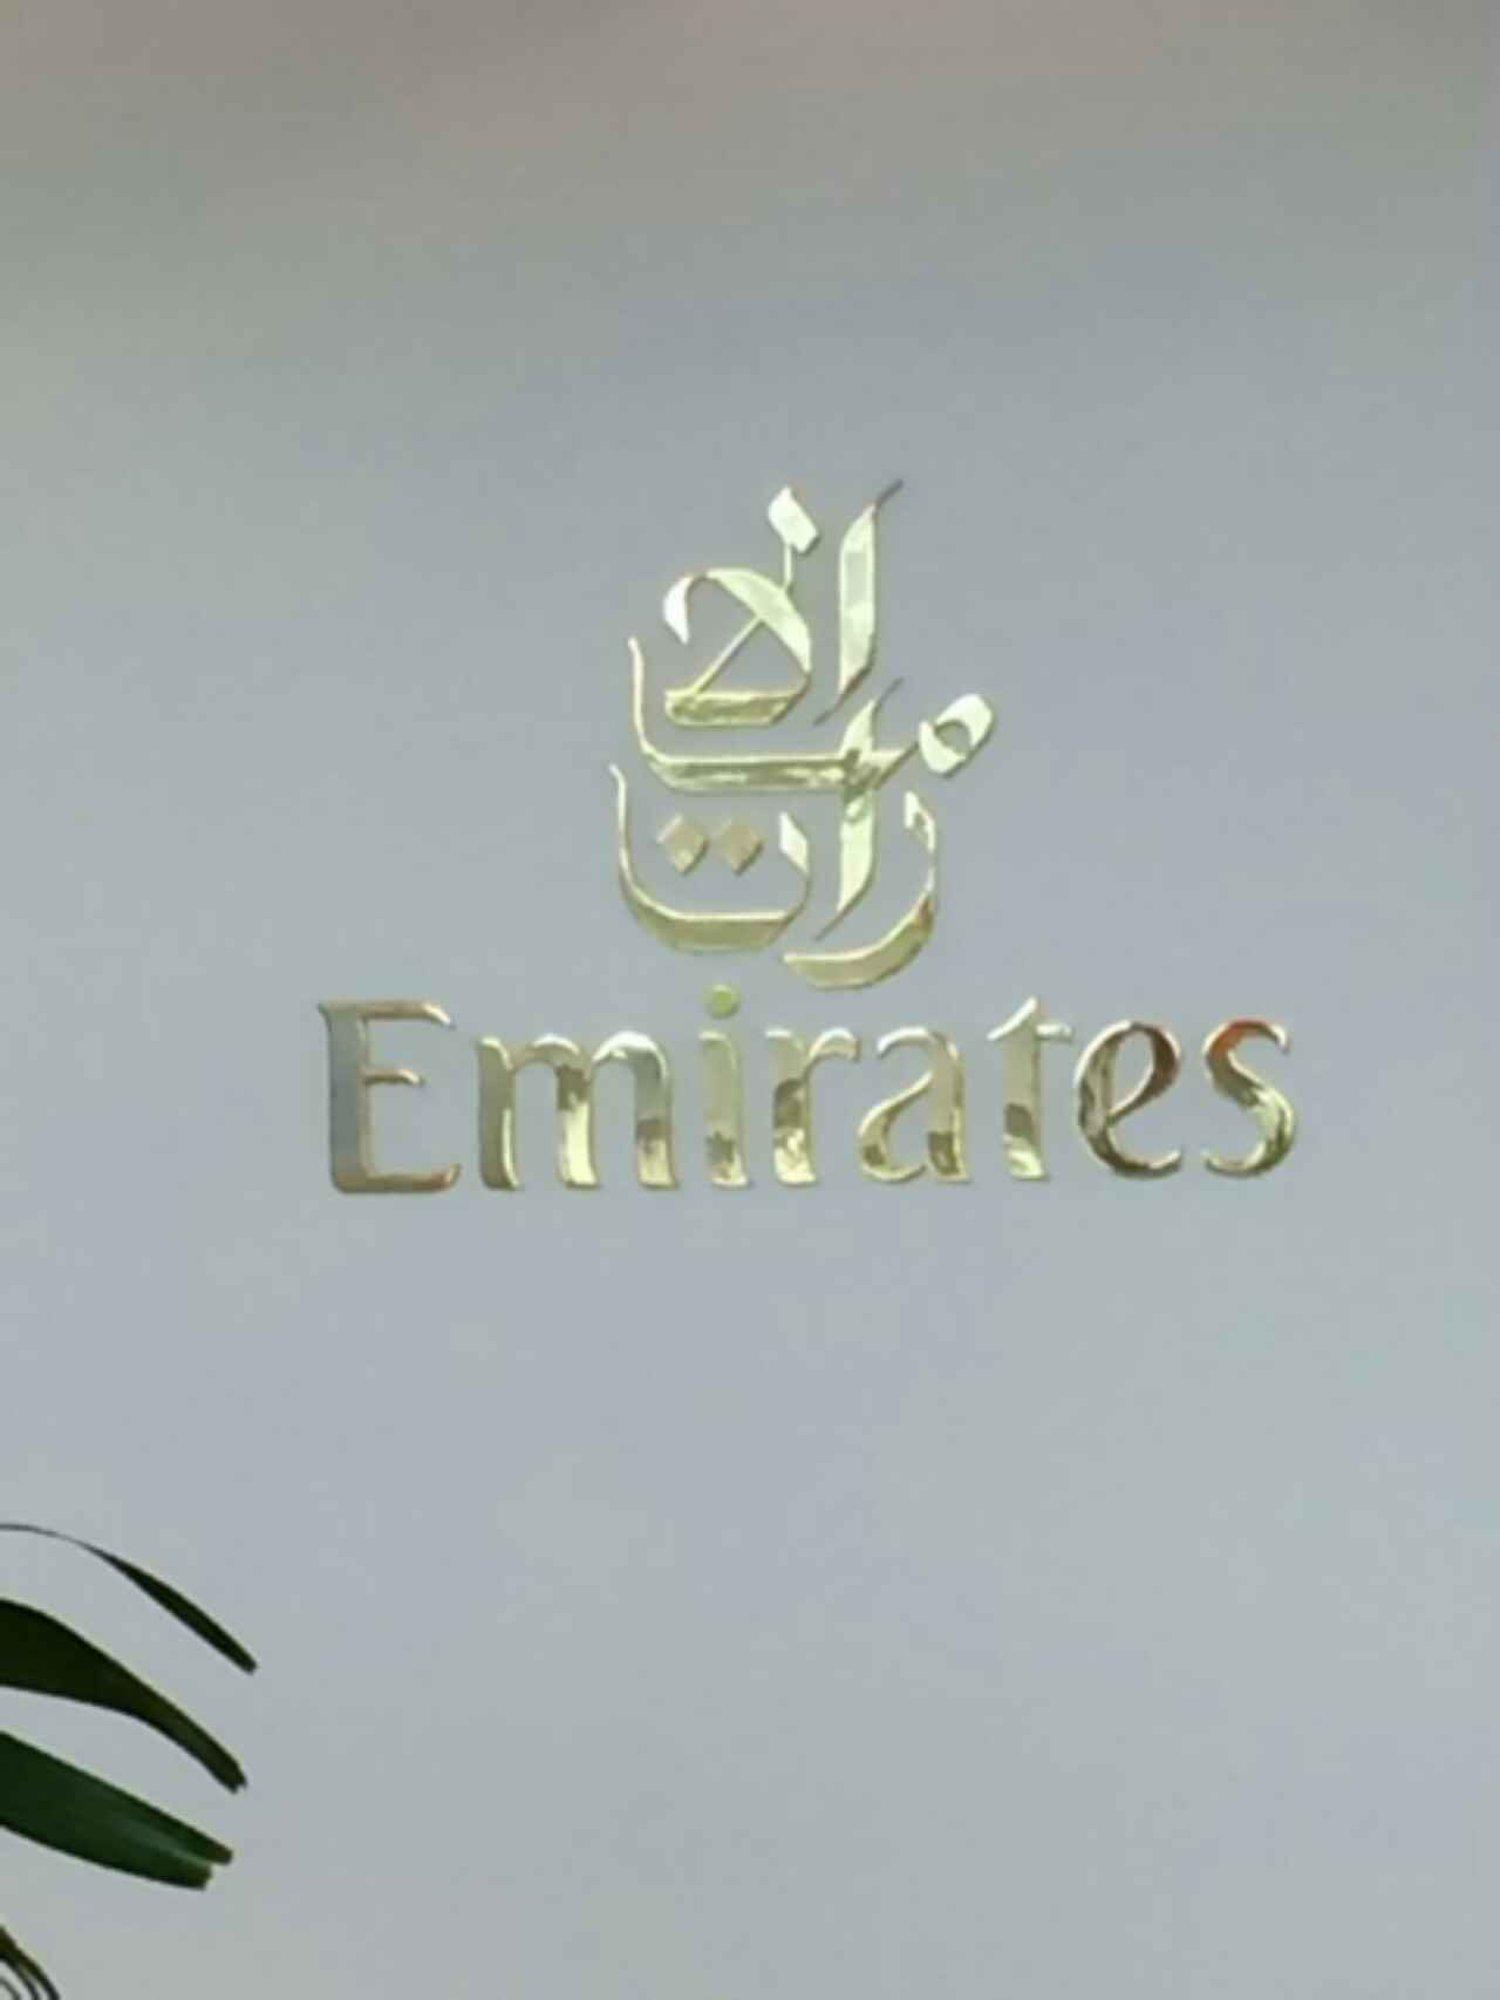 The Emirates Lounge image 7 of 8